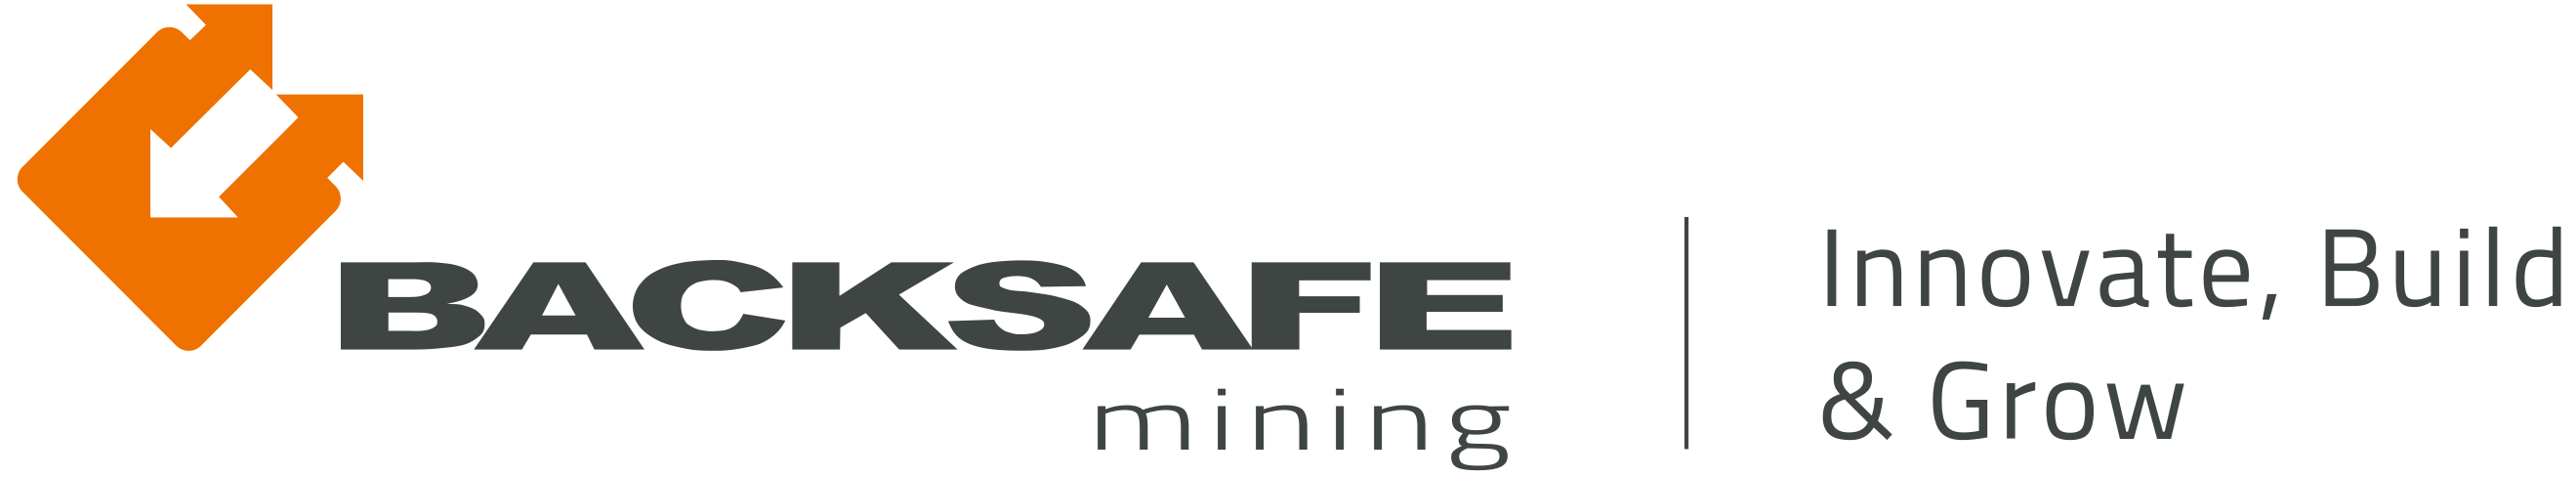 Backsafe Mining